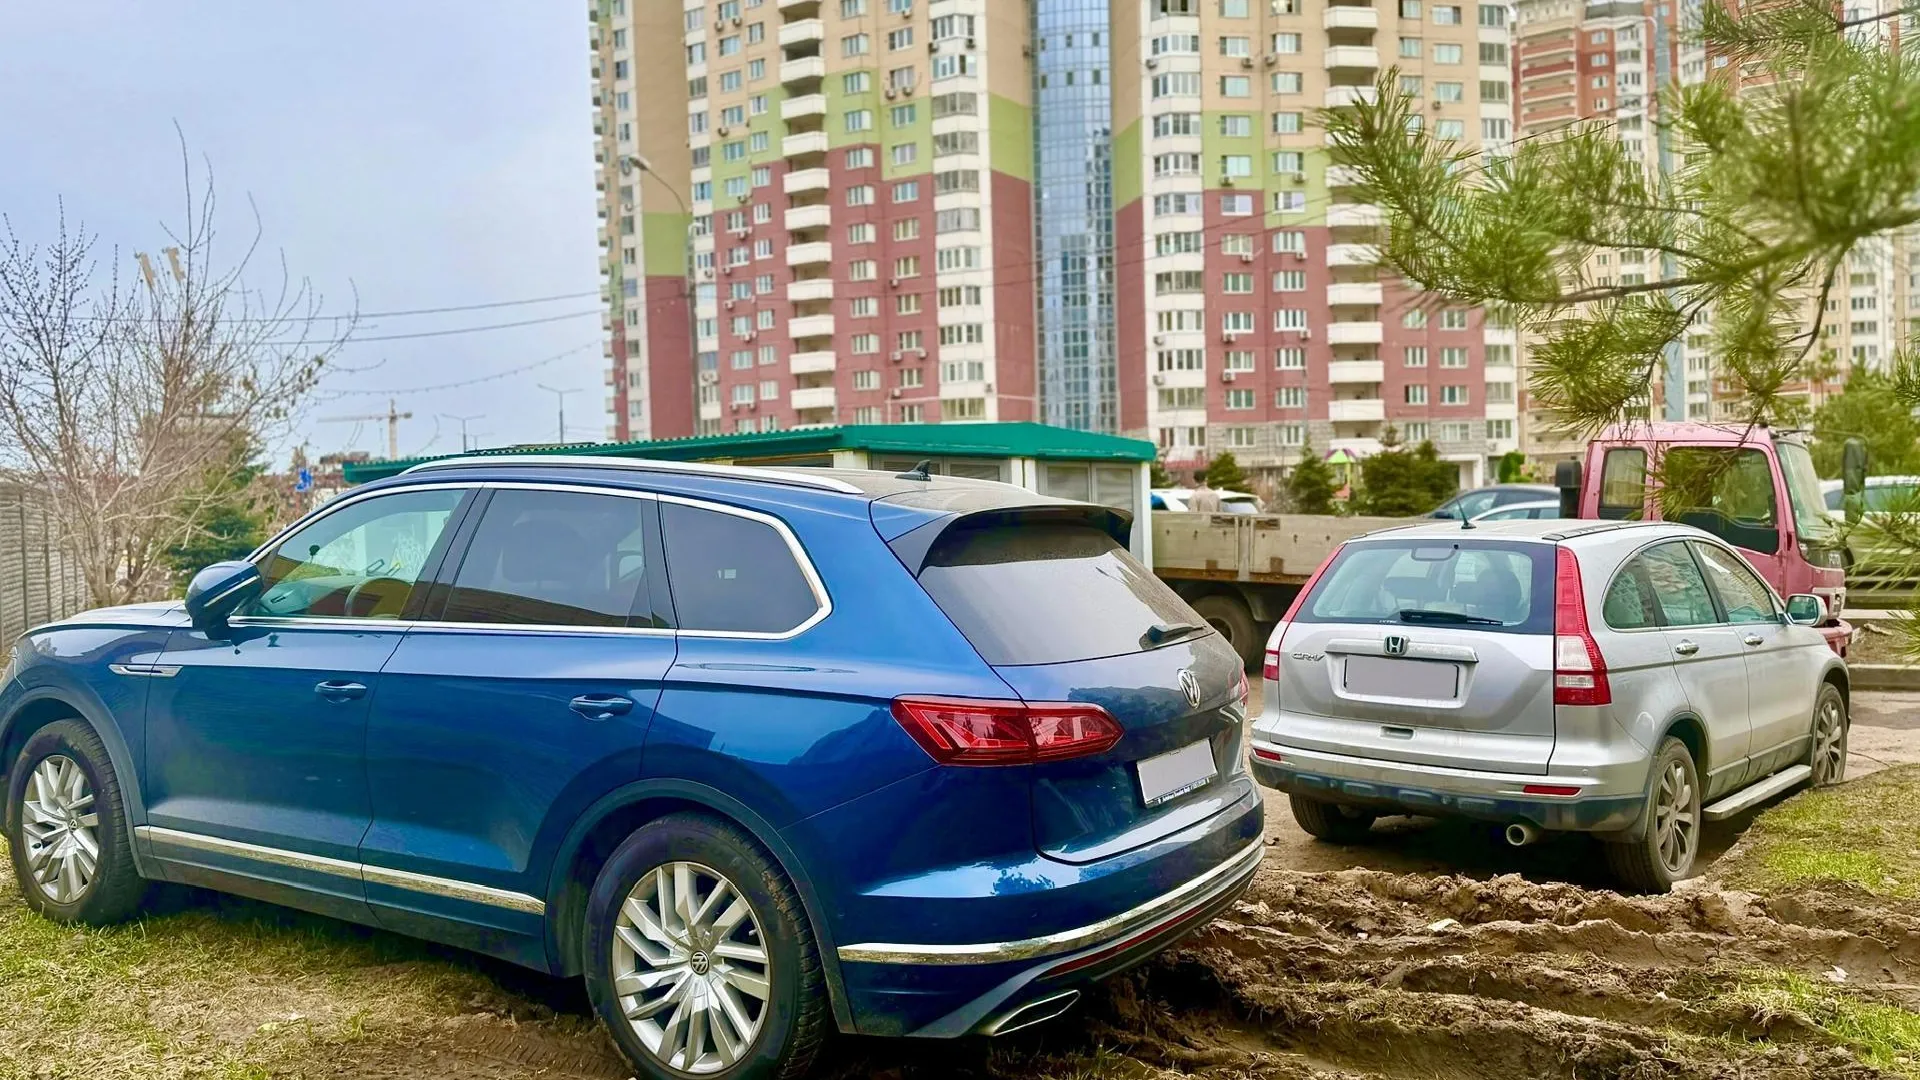 70 случаев неправильной парковки во дворах зафиксировано в Подмосковье за апрель